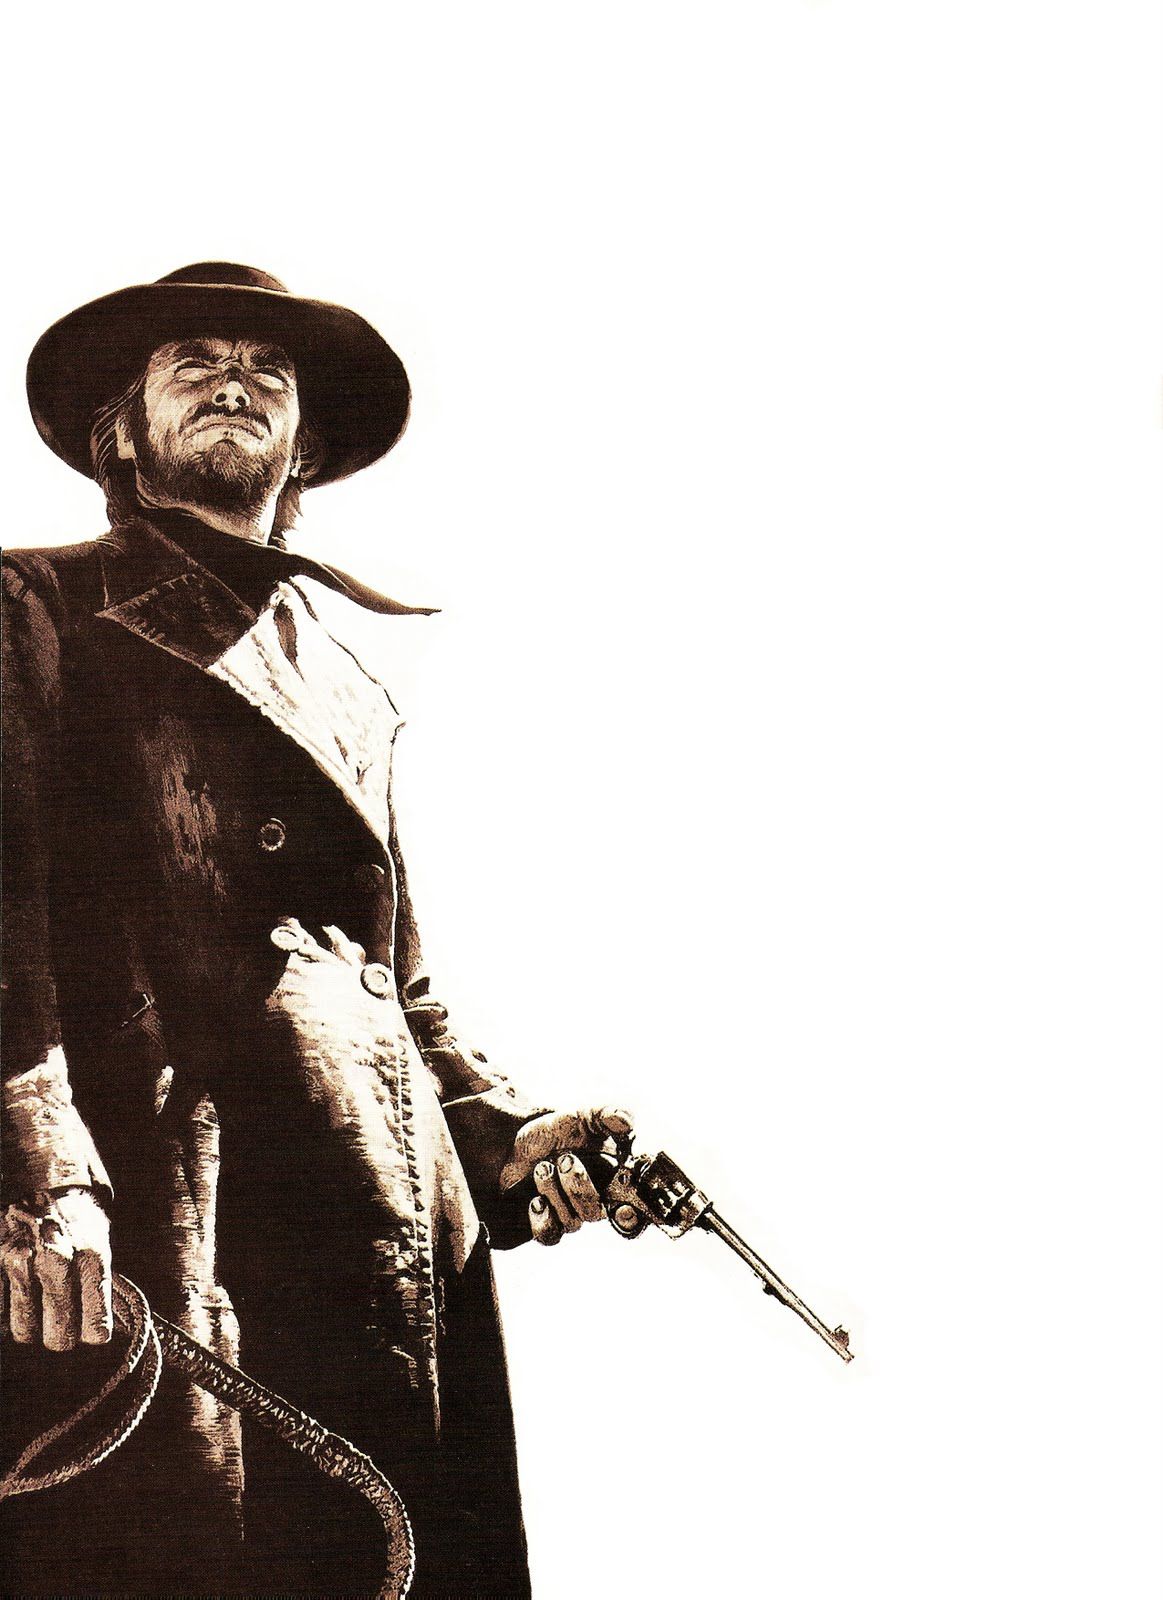 High Plains Drifter Clint Eastwood With Bullwhip Pistol